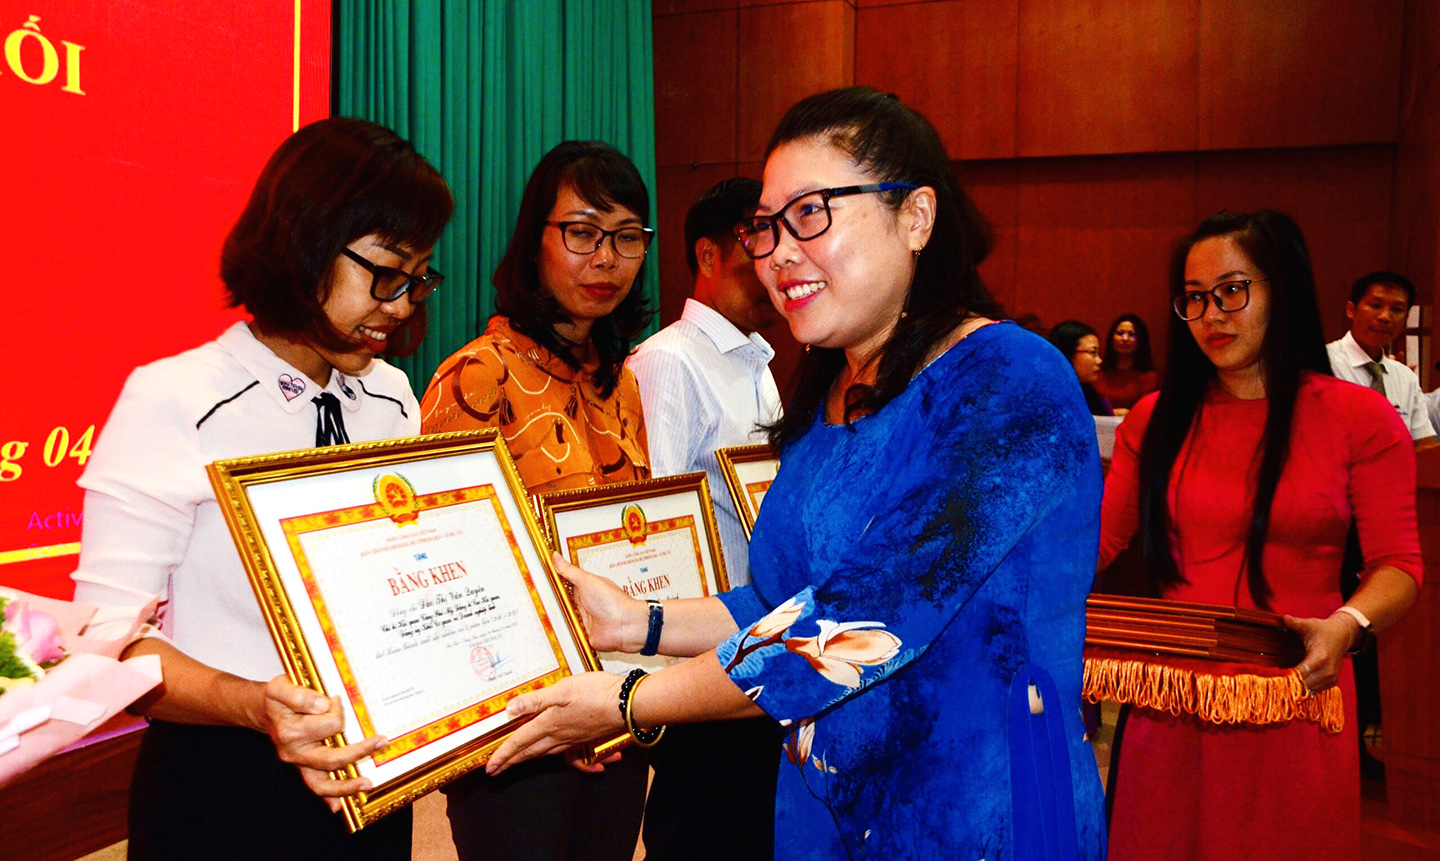 Bà Lương Thị Lệ Hằng, Bí thư Đảng ủy Khối Cơ quan và Doanh nghiệp trao bằng khen của Ban Thường vụ Tỉnh ủy cho các đảng viên hoàn thành xuất sắc nhiệm vụ 5 năm liền (2016-2020).